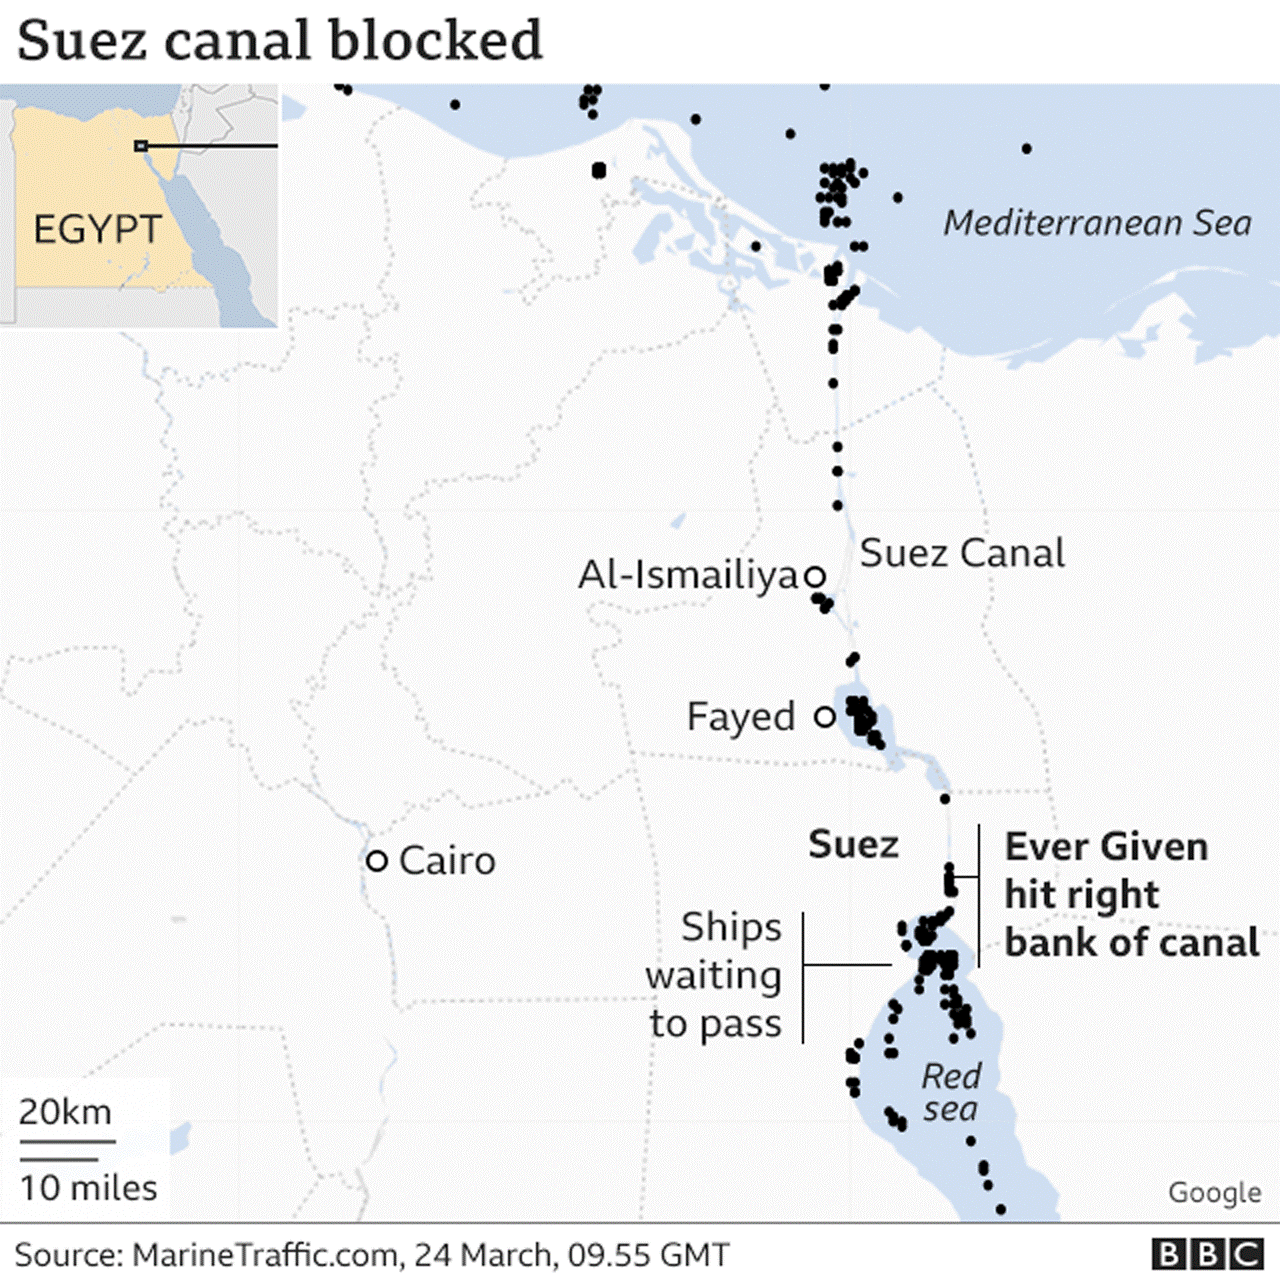 Ever Given Memblokade Suez Canal Dan Antisipasi Asuransi Terhadap Ganti Rugi Yang Akan Terjadi